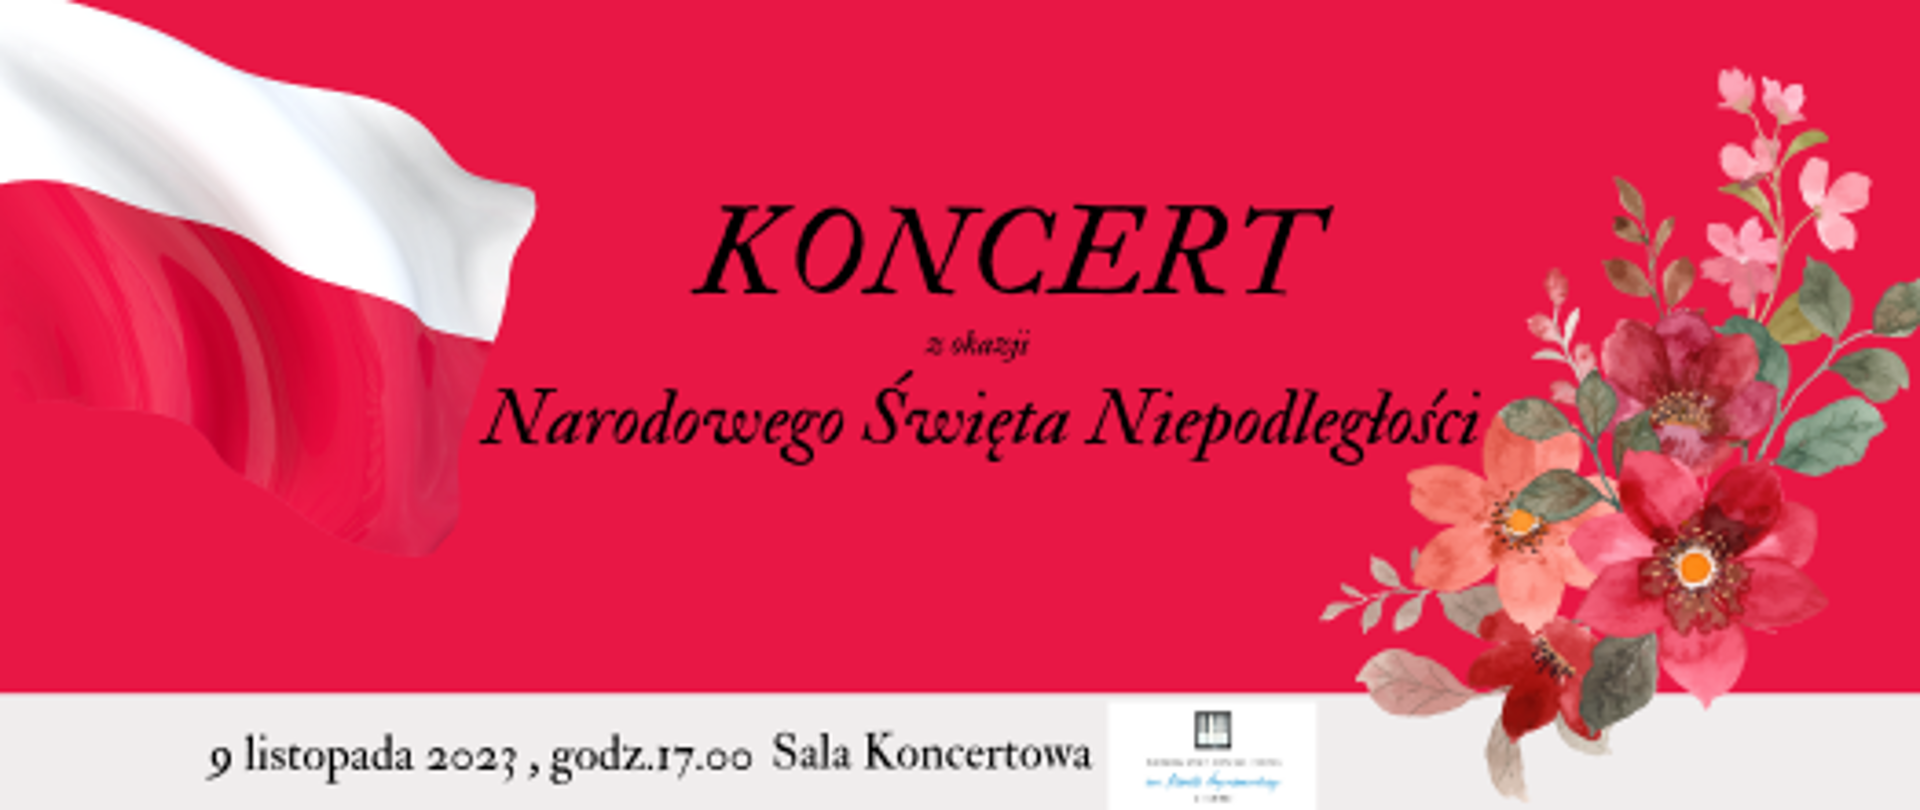 Baner z napisem Koncert z okazji Narodowego Święta Niepodległości na czerwonym tle motyw kwiatowy i flaga narodowa Polski.